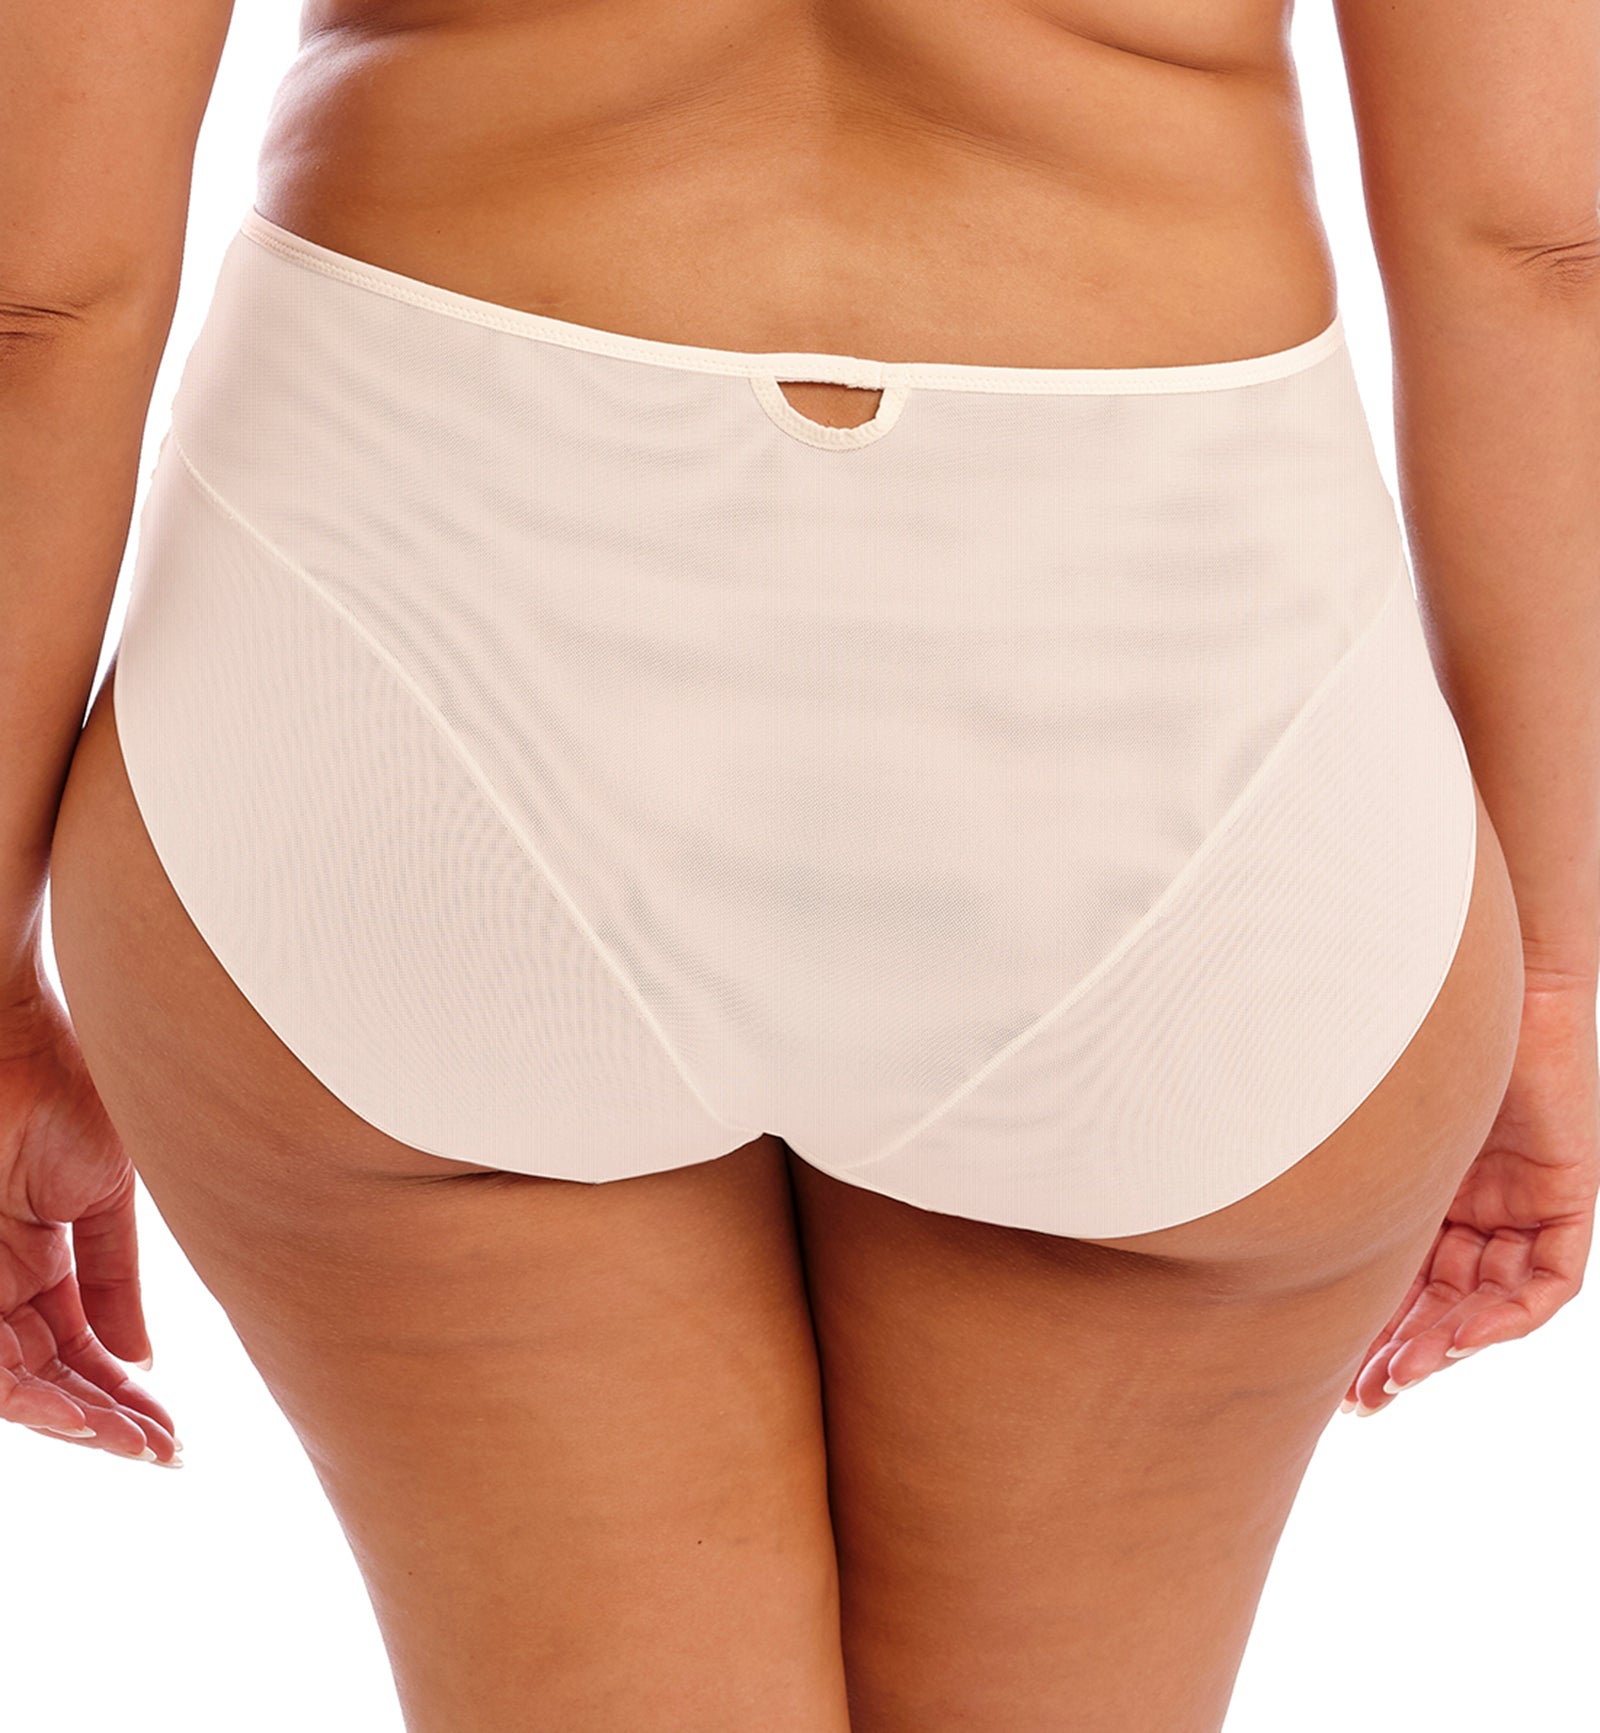 Elomi Priya Matching Full Brief Panty (4555),Medium,Vanilla - Vanilla,Medium